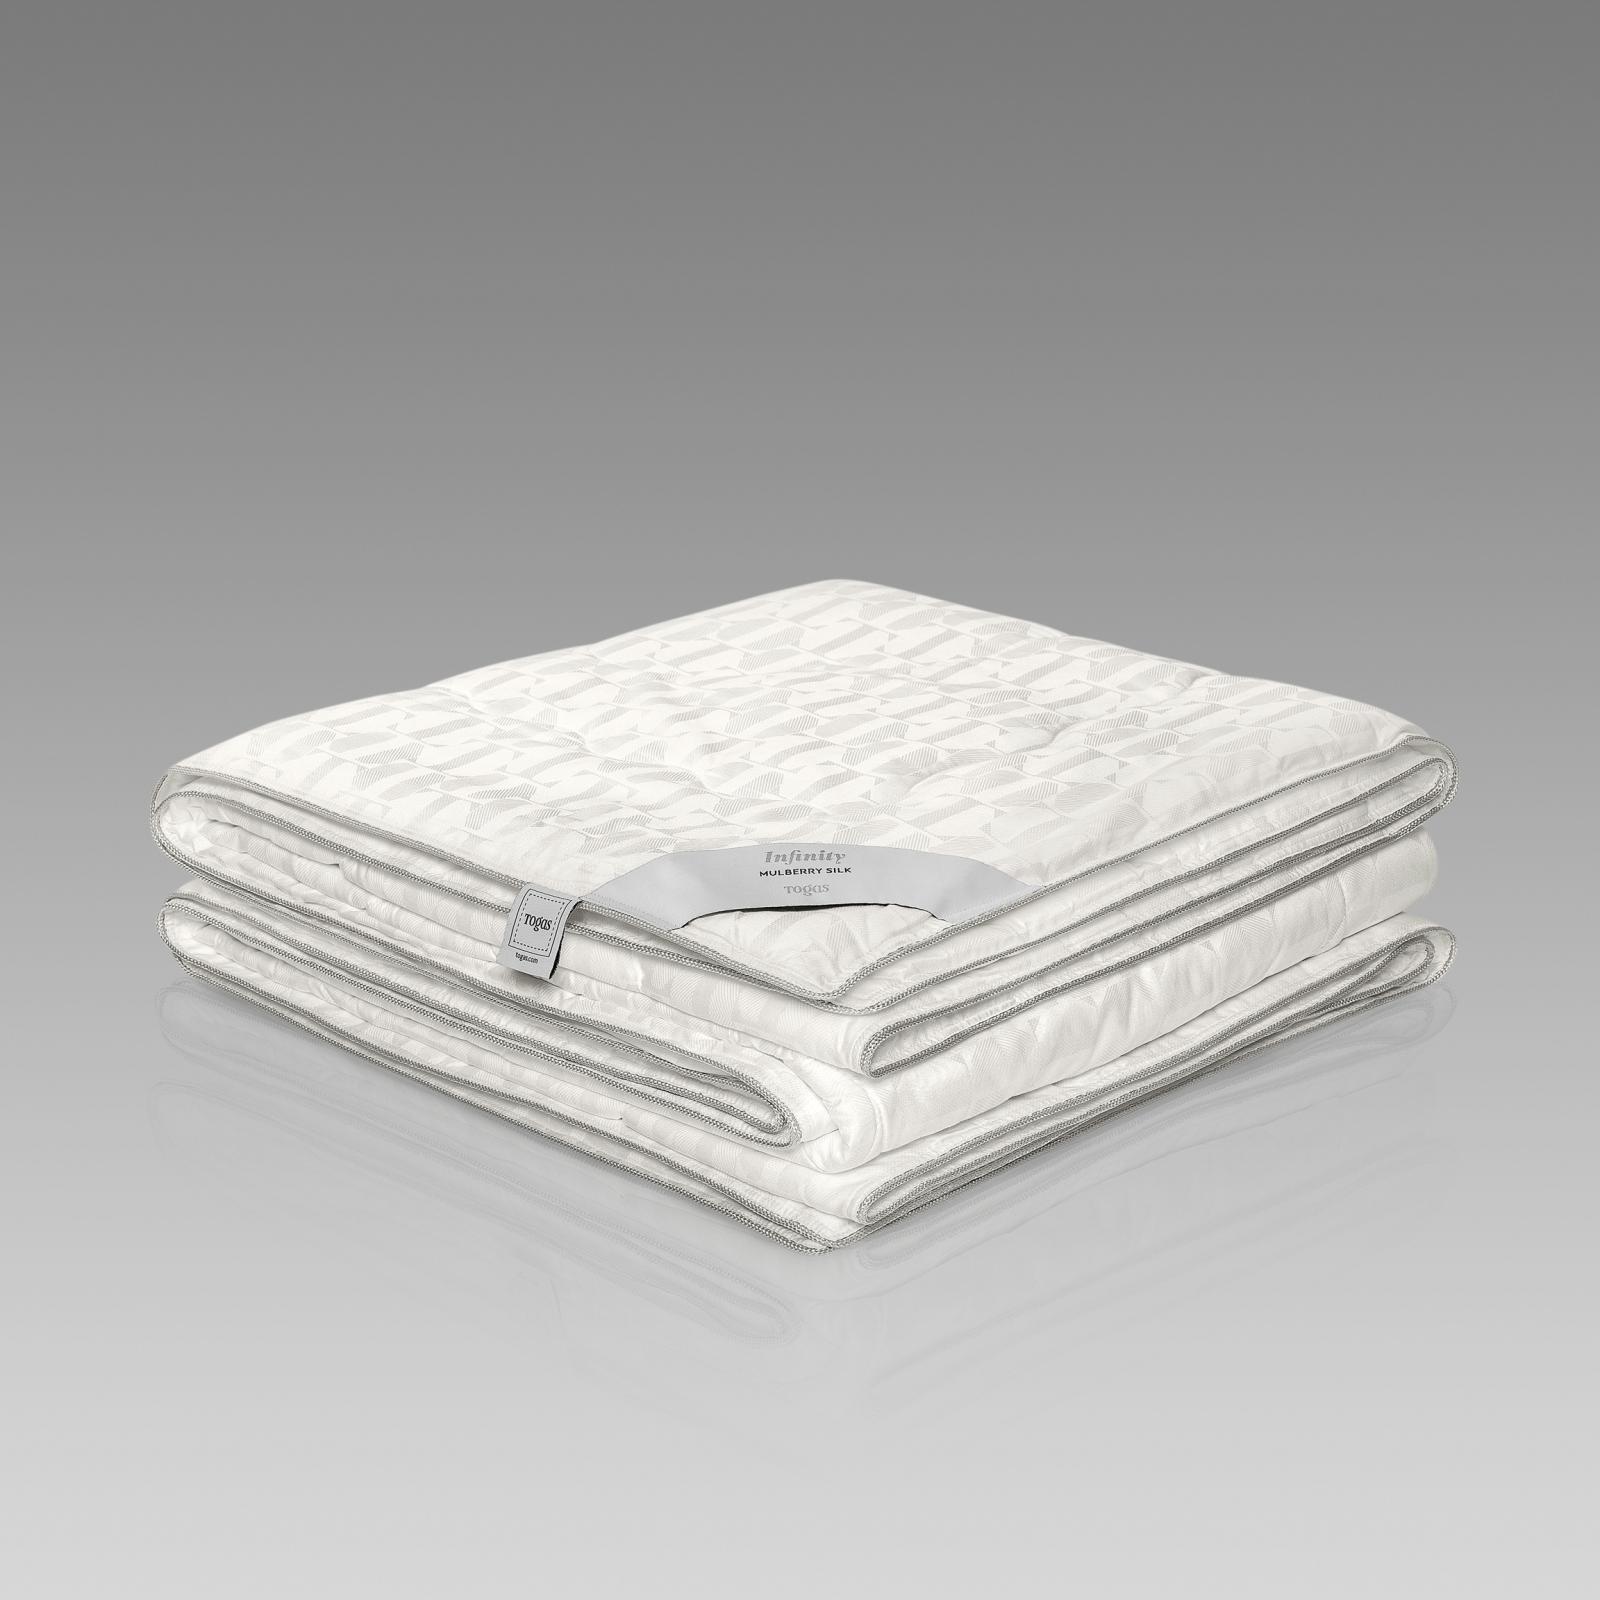 Одеяло Togas Инфинити 200х210 см (20.04.16.0110) одеяло togas лира белое 200х210 см 20 04 17 0092